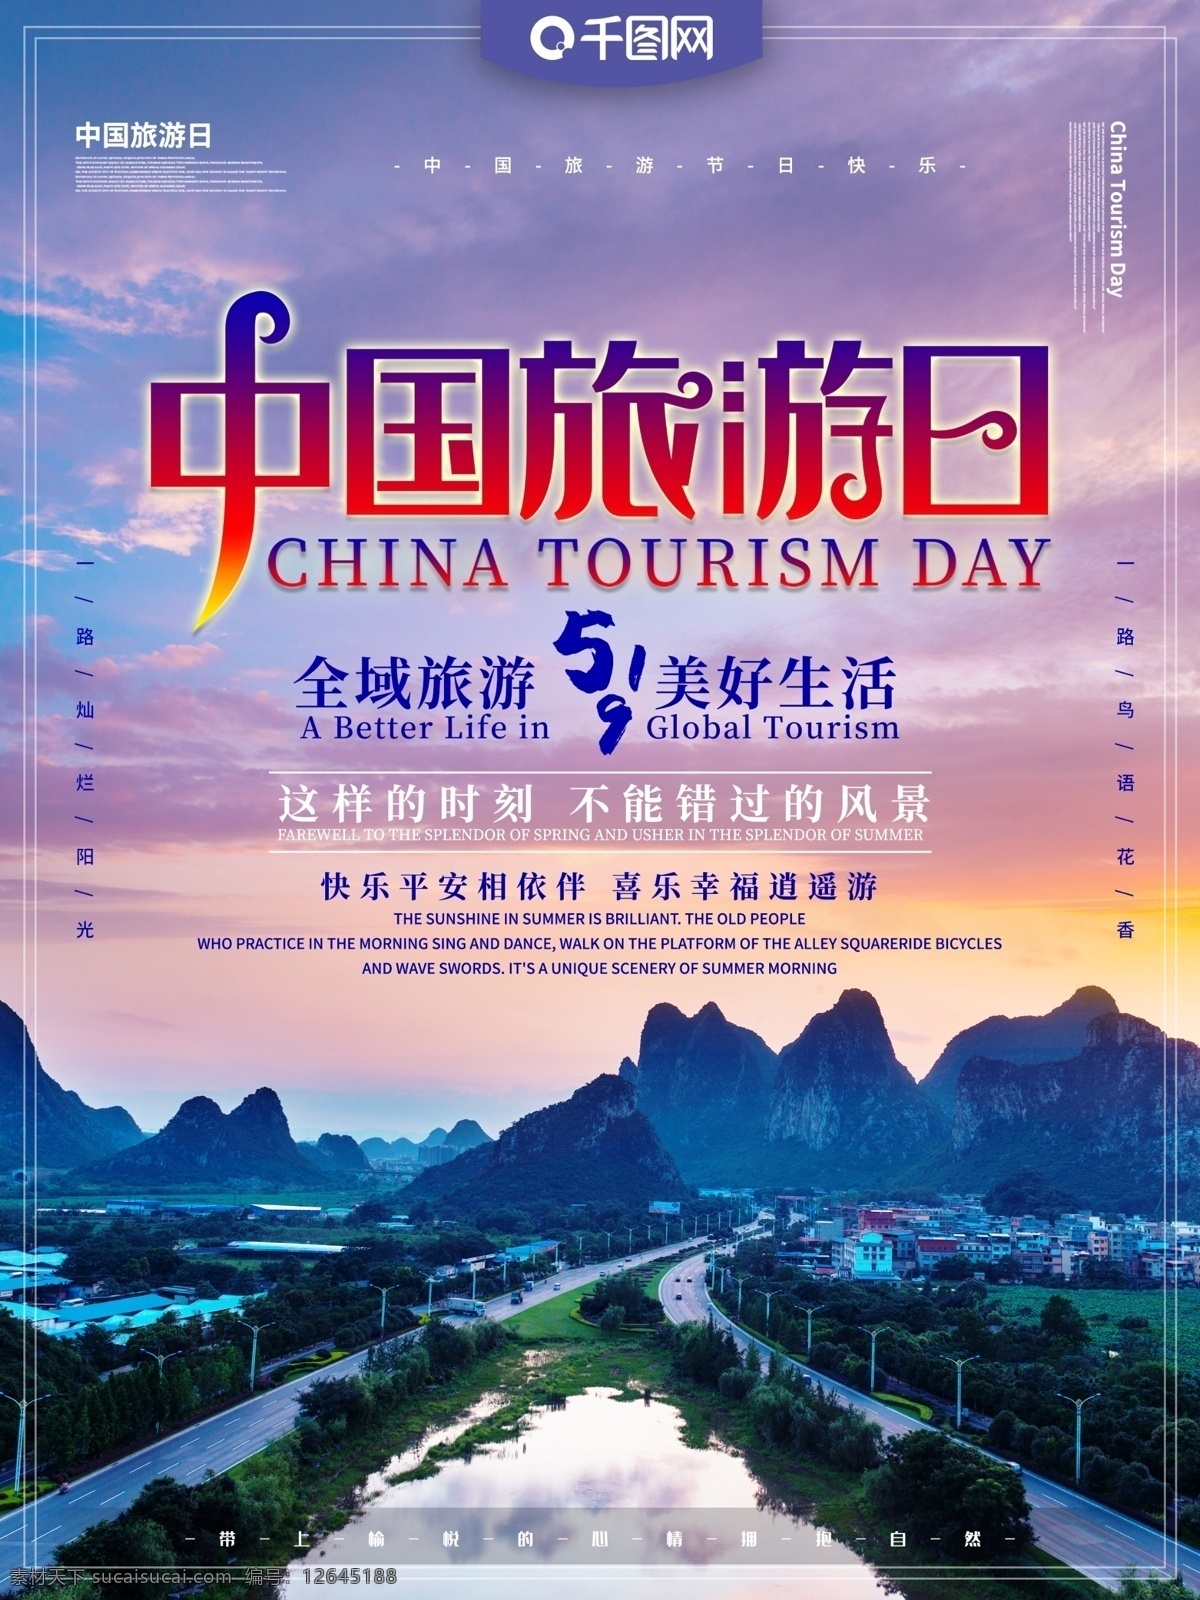 中国旅游 日 主题 海报 中国旅游日 旅游 全域旅游 旅游日 旅行